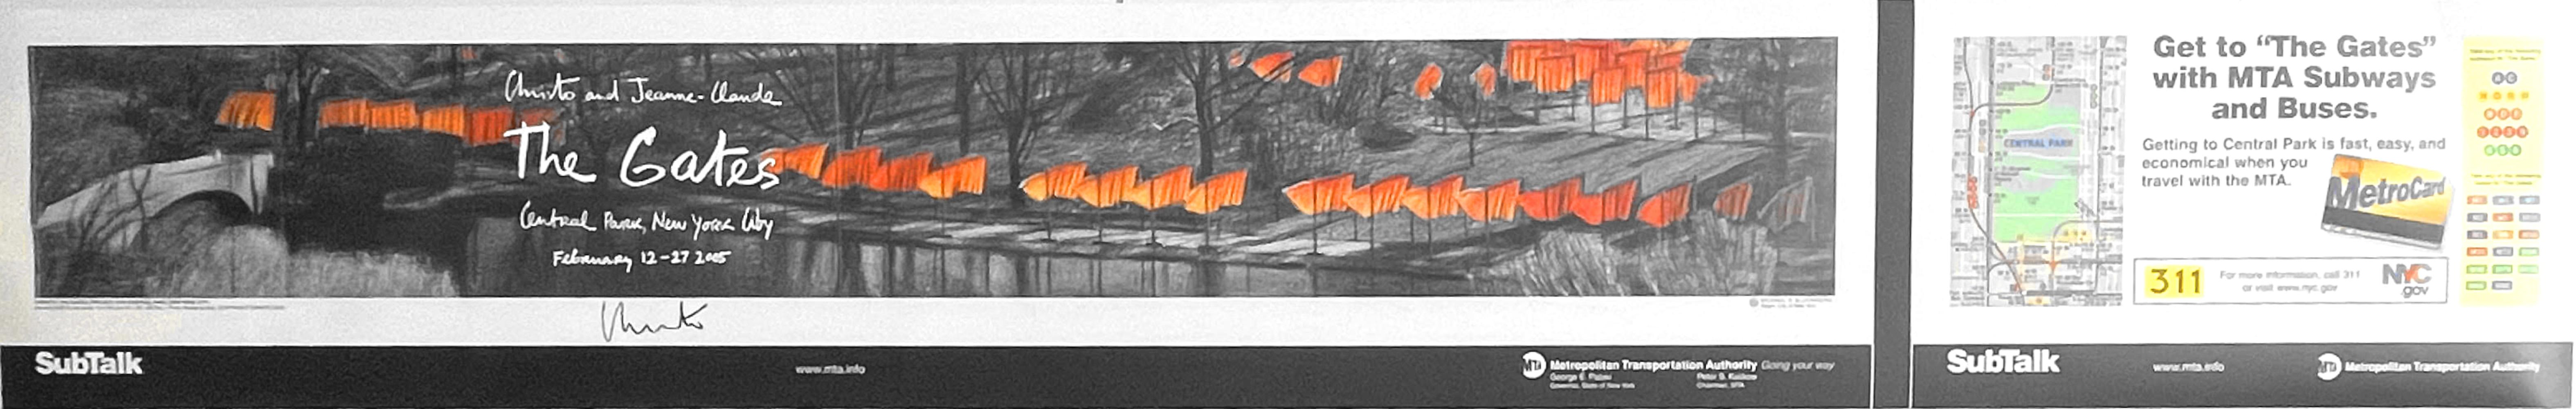 Christo
The Gates, affiche historique du métro de New York (signée à la main par Christo), 2005
Affiche lithographique offset (signée au recto par Christo)
Signé à la main par Christo au recto.
11 × 69 1/2 pouces
Non encadré
Peu de choses sont plus